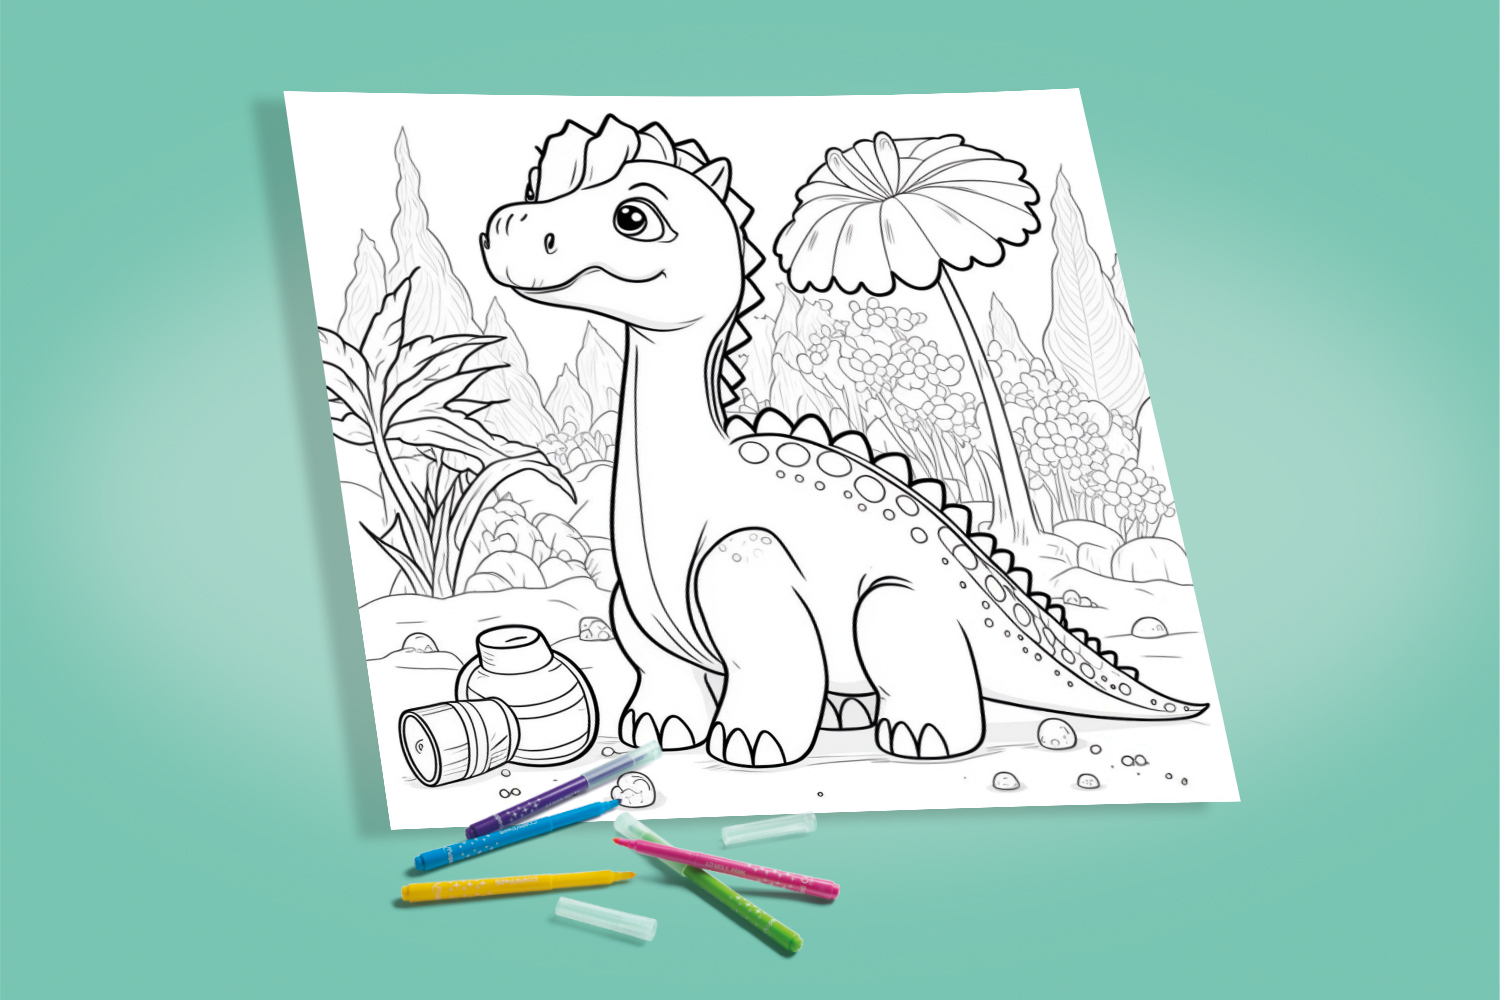 Dessin gratuit - Coloriage famille de dinosaures pour enfants